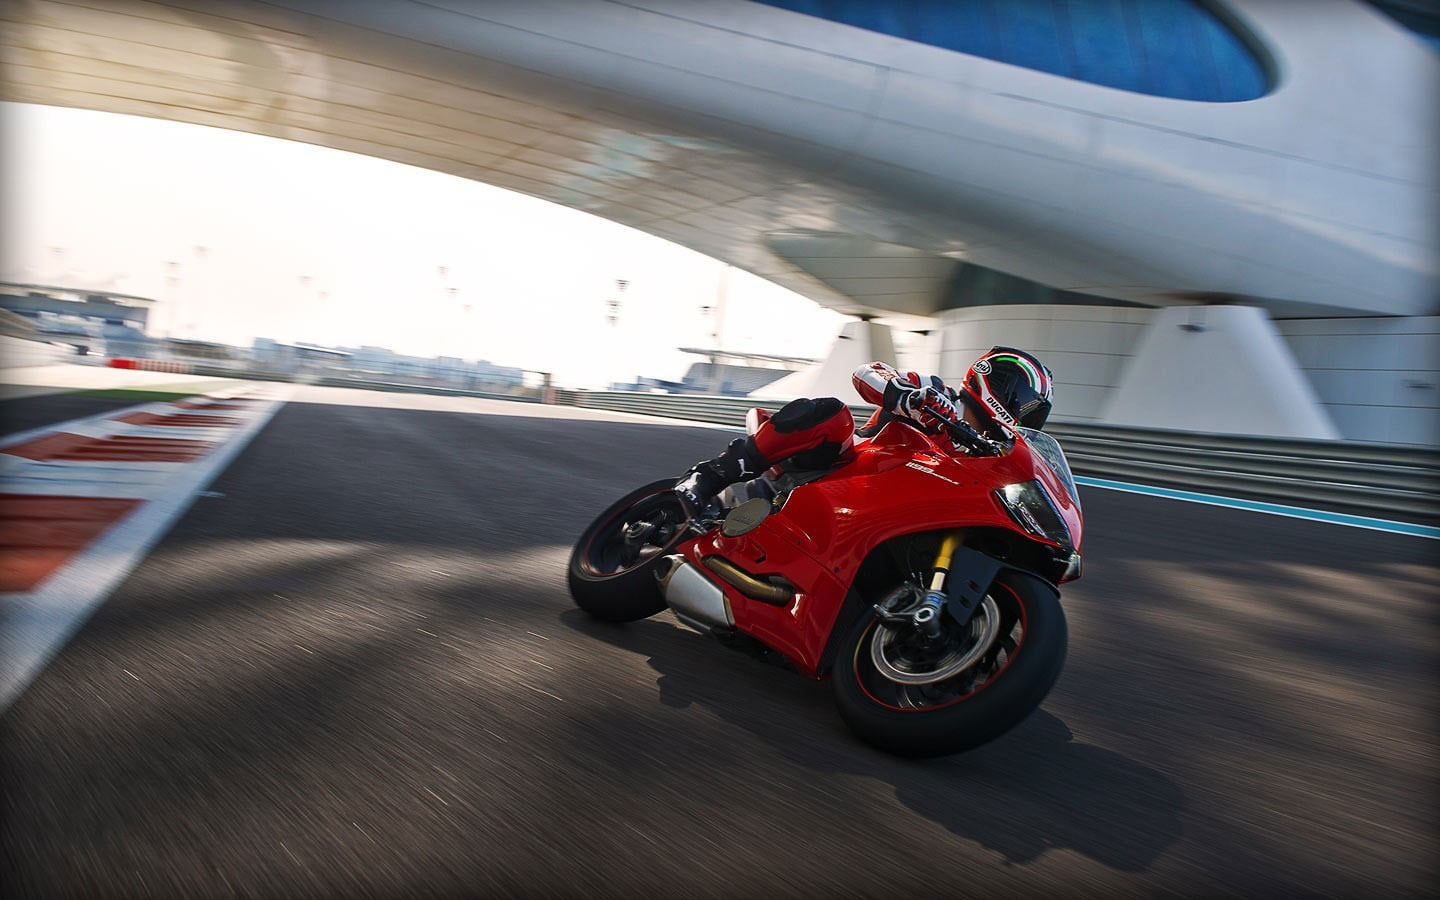 Red Ducati sports bike wallpaper, motorcycle, Ducati 1199, transportation